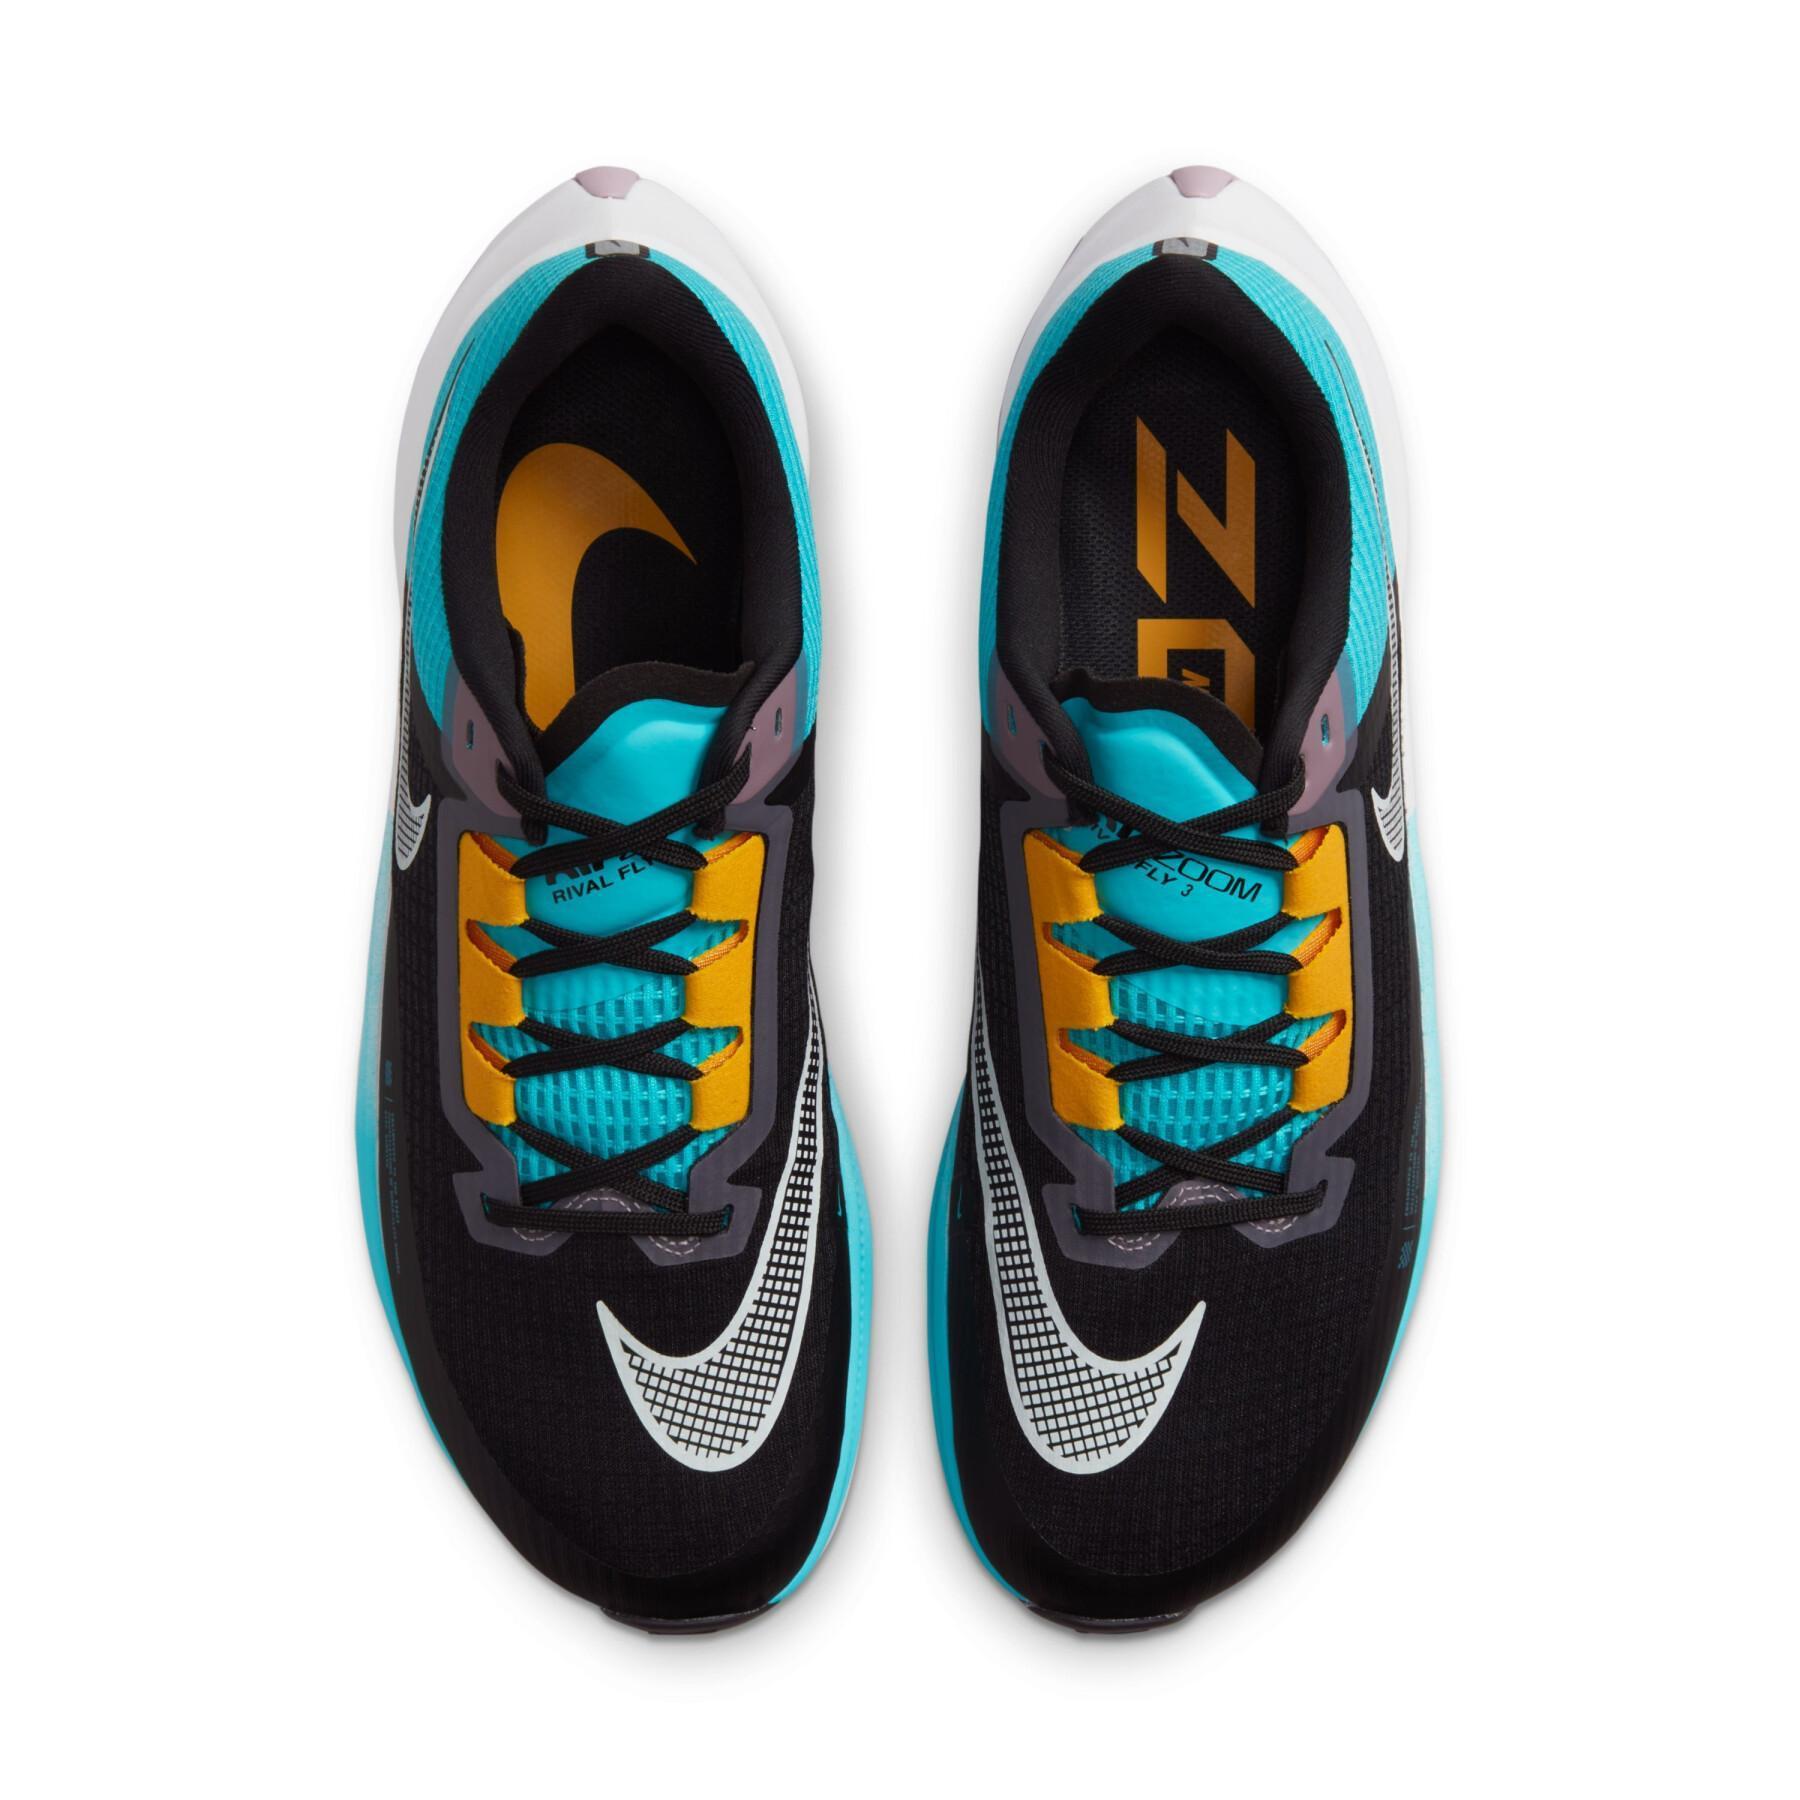 Sapatos de corrida Nike Air Zoom Rival Fly 3